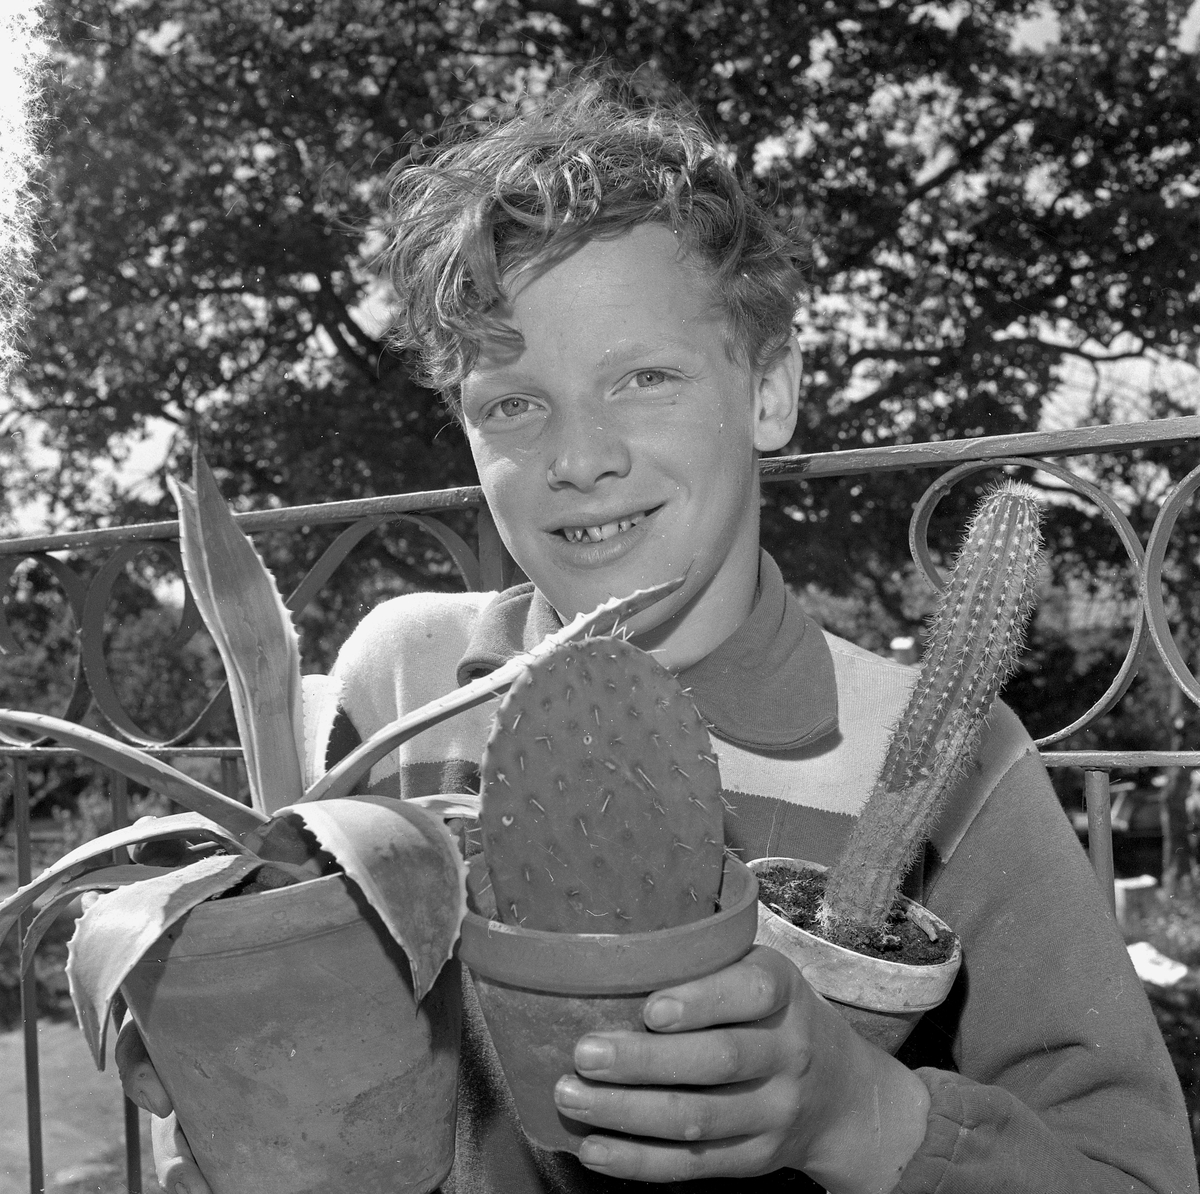 Kaktuskille i Hidingebro.
18 juni 1957.